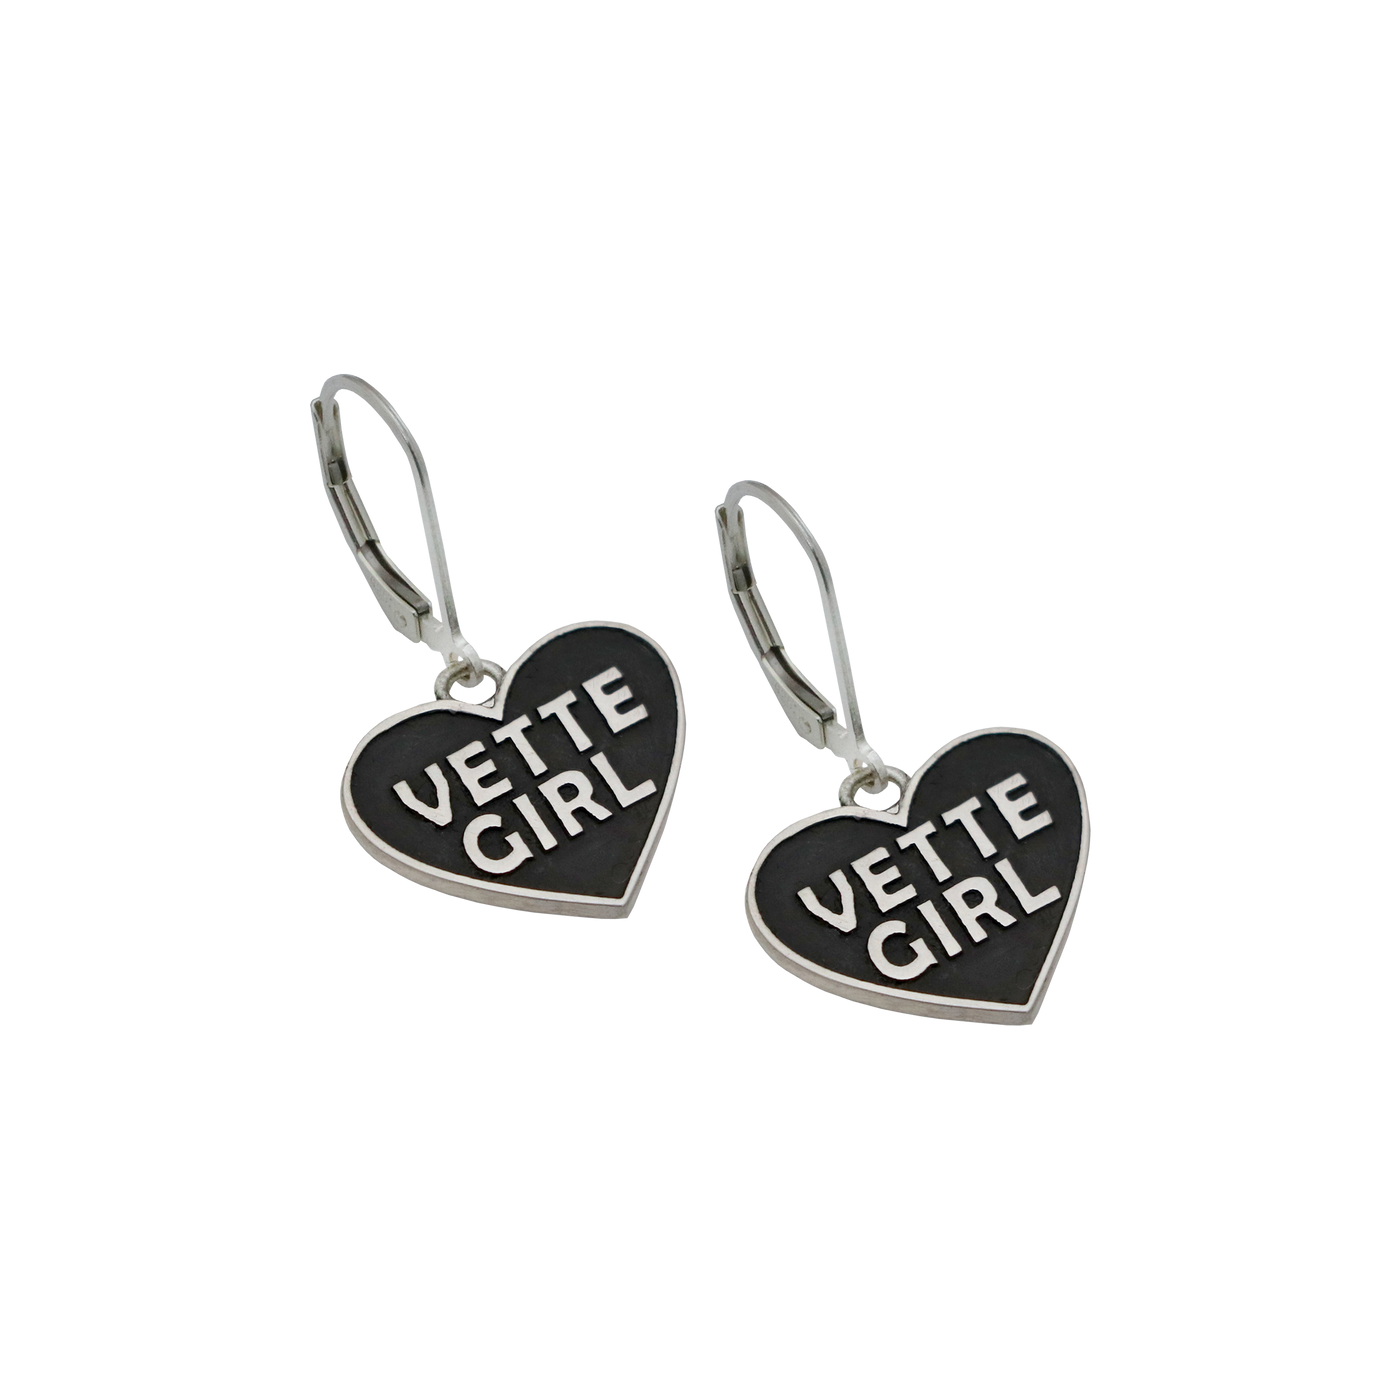 Vette Girl Earrings